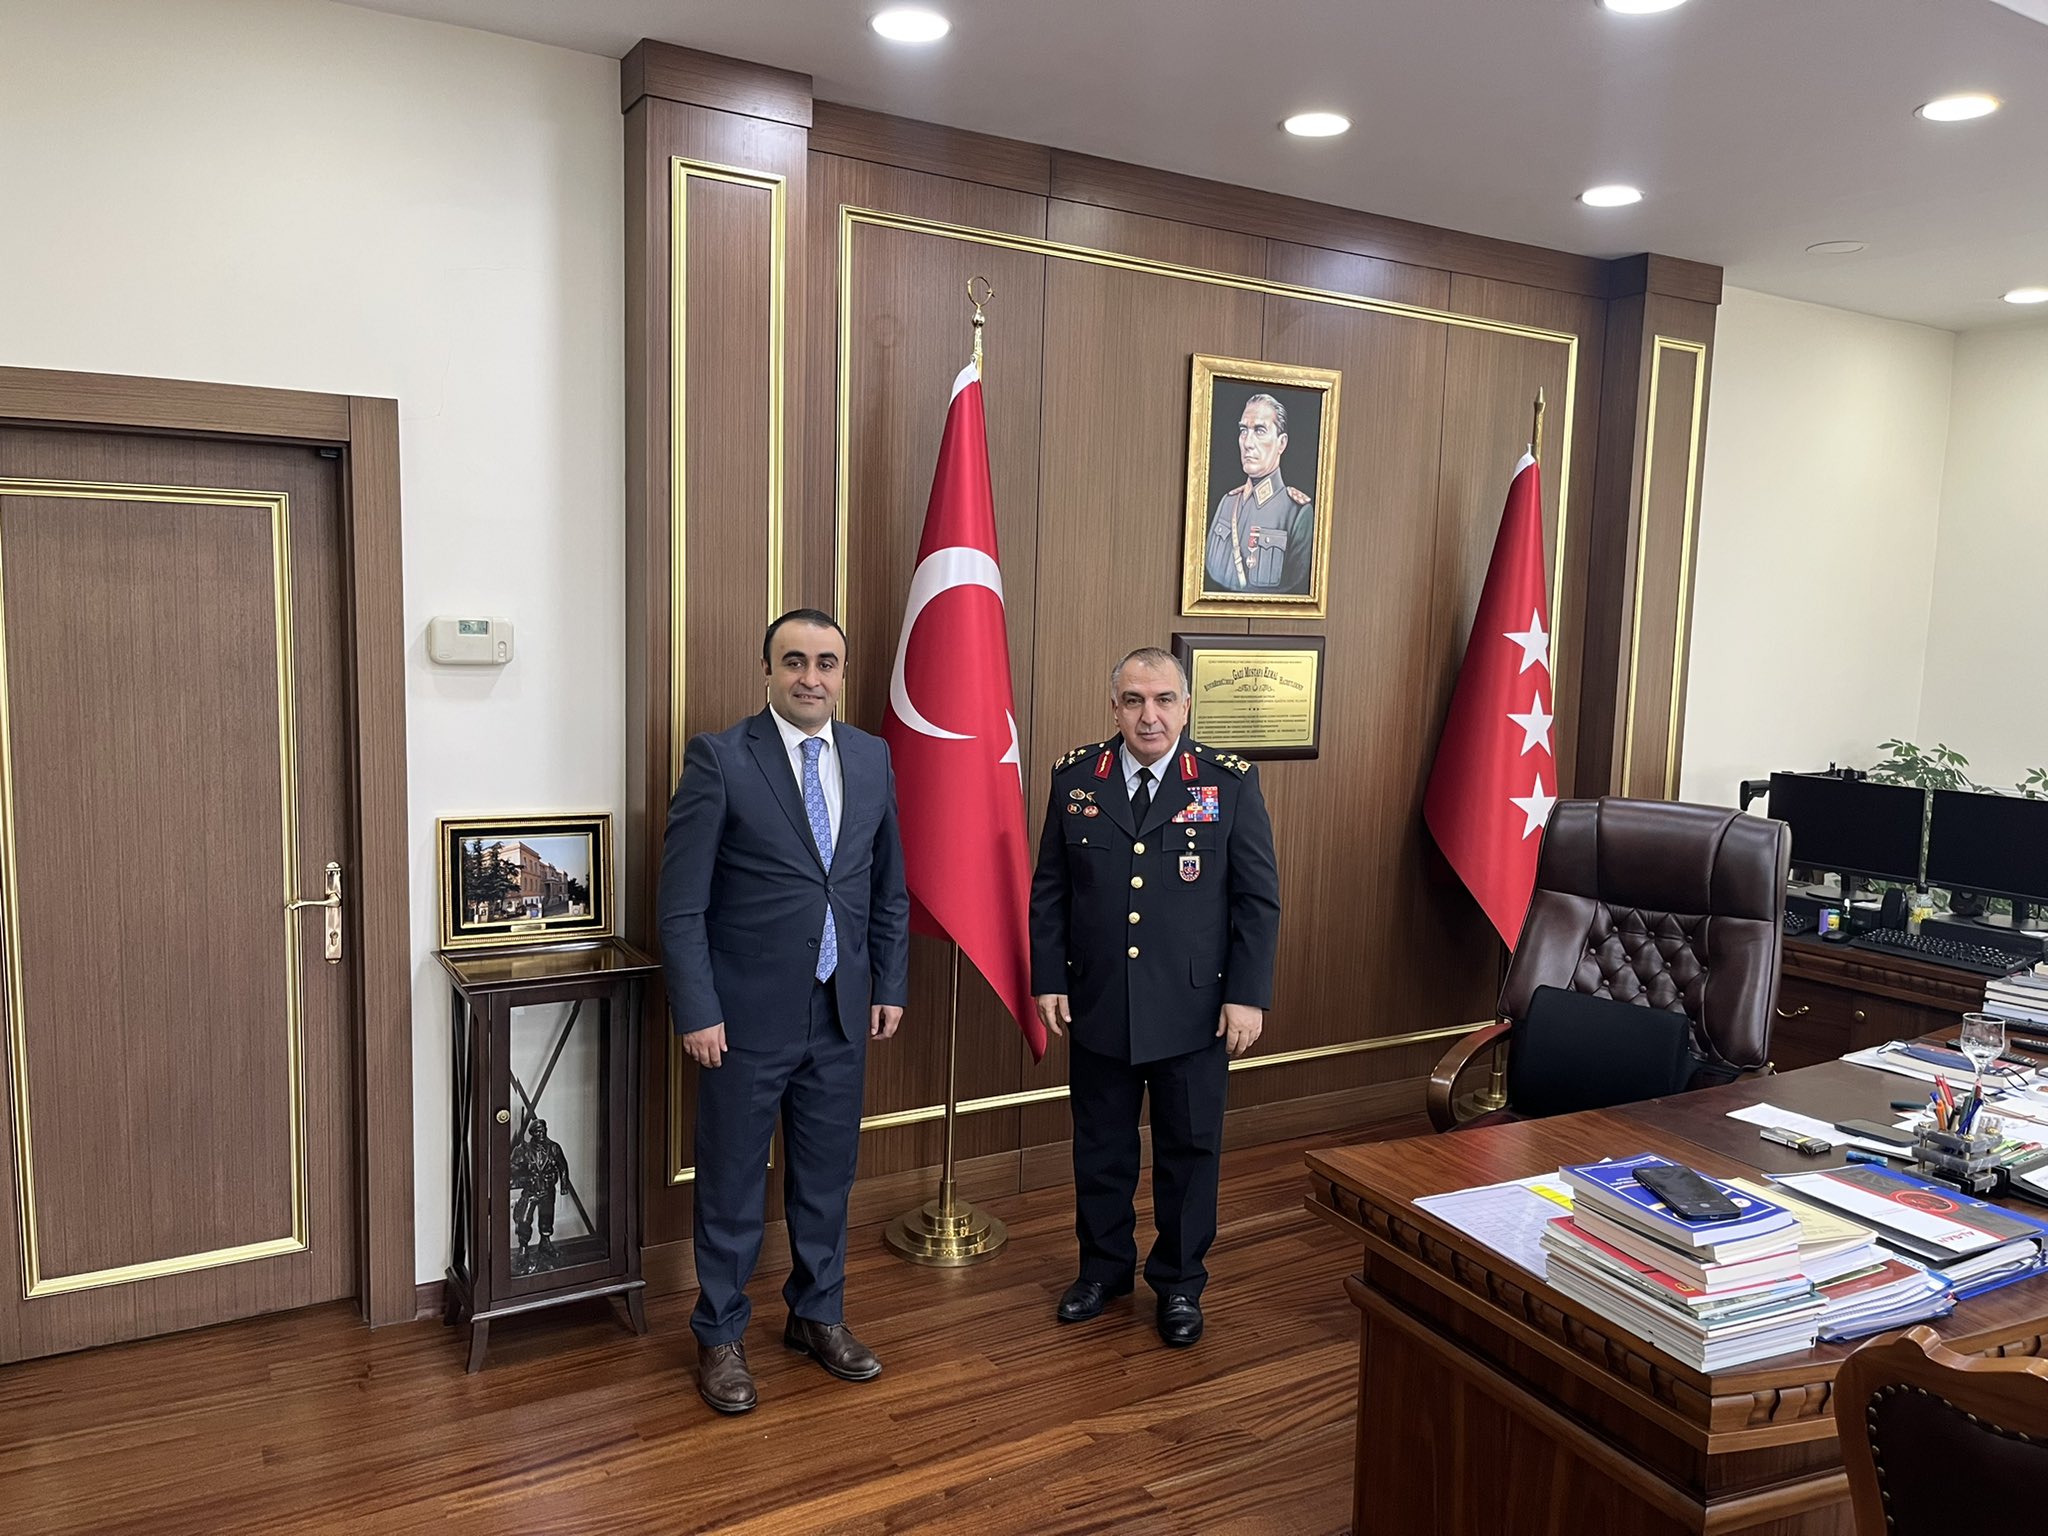 Kurtalan Kaymakamı Çağlar Tekin’in Ankara Temasları Devam Ediyor, İlçeye Jandarma Komutanlığı Binası Yapılacak